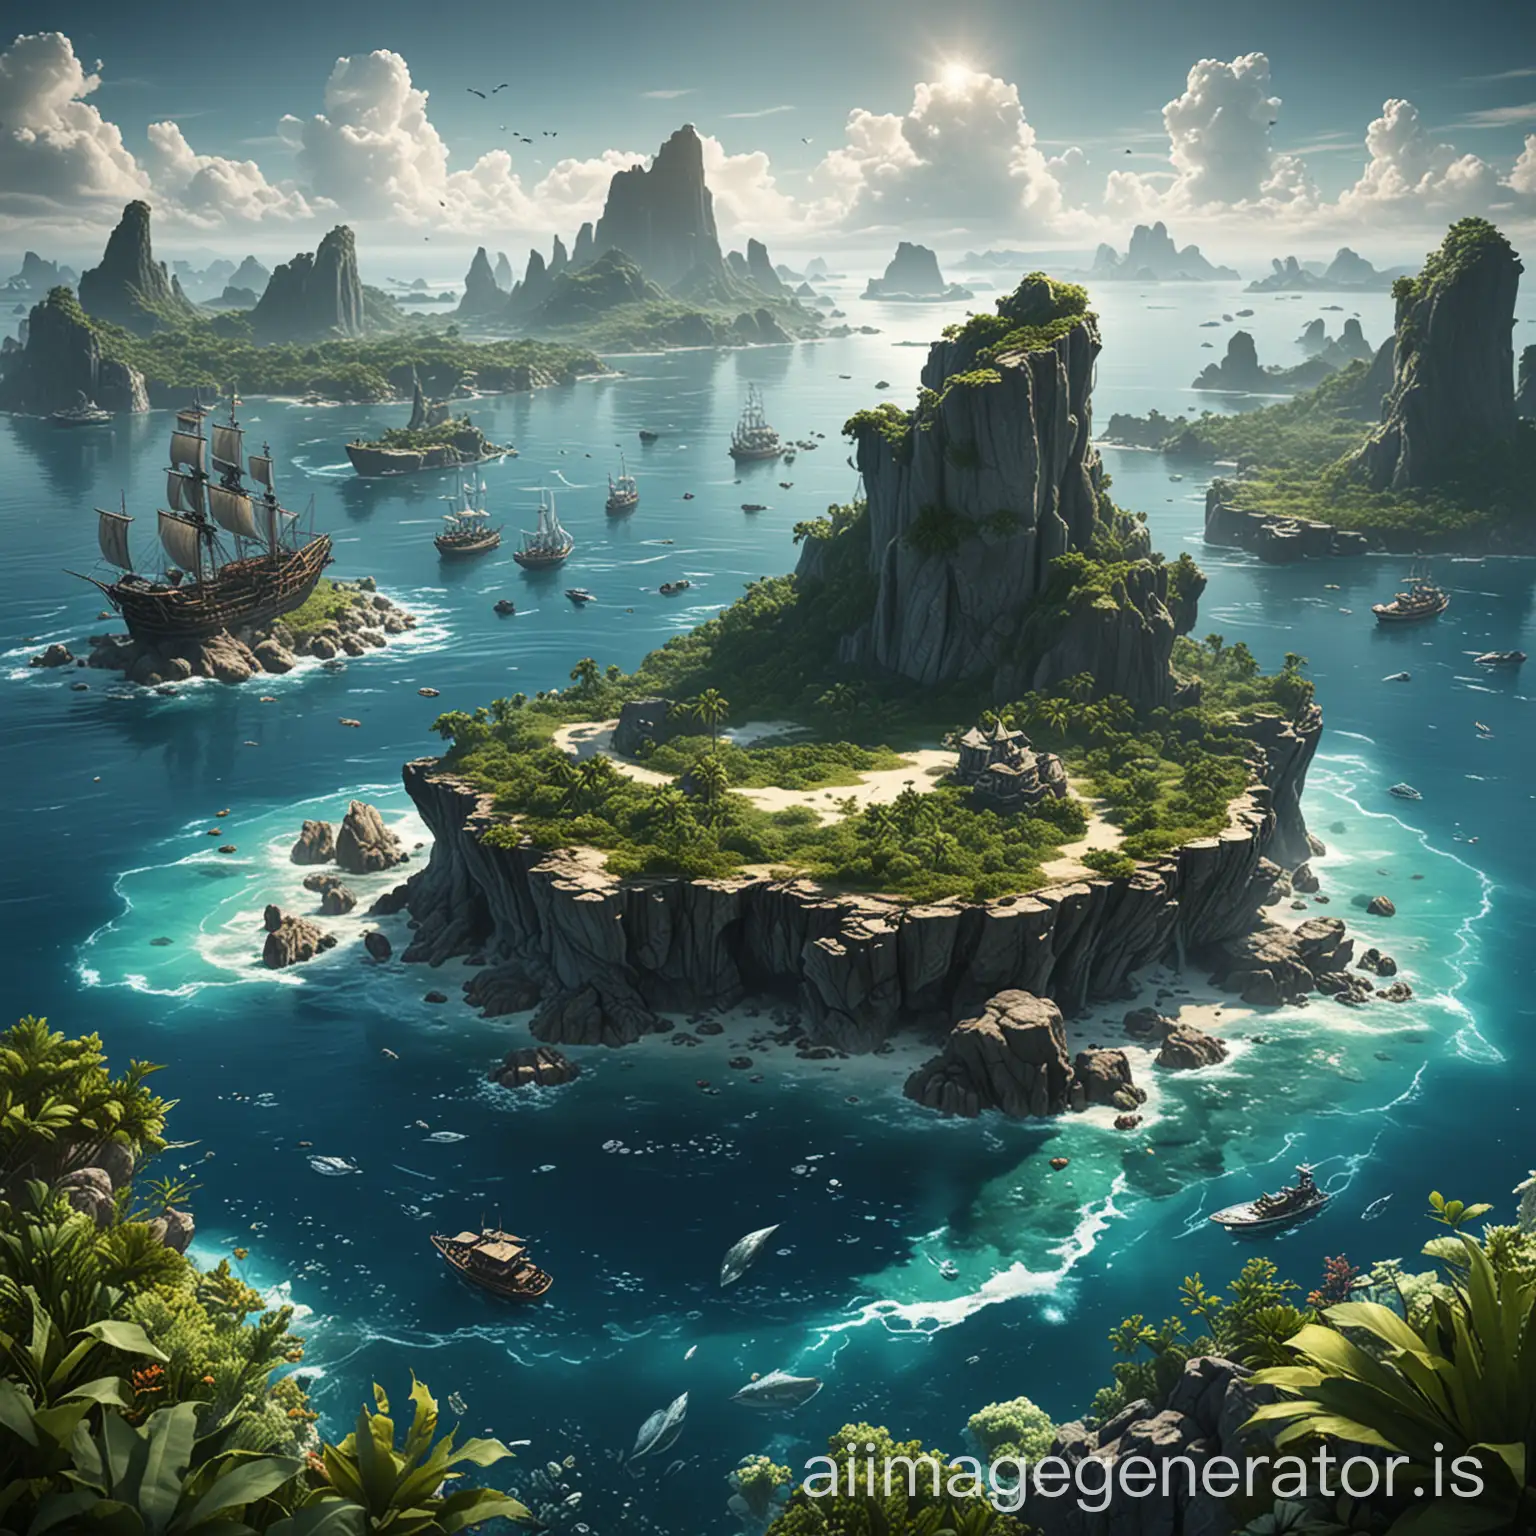 水晶海域：环绕岛屿的海洋区域，有众多岛屿和暗礁，适合水下探索和海盗战斗。